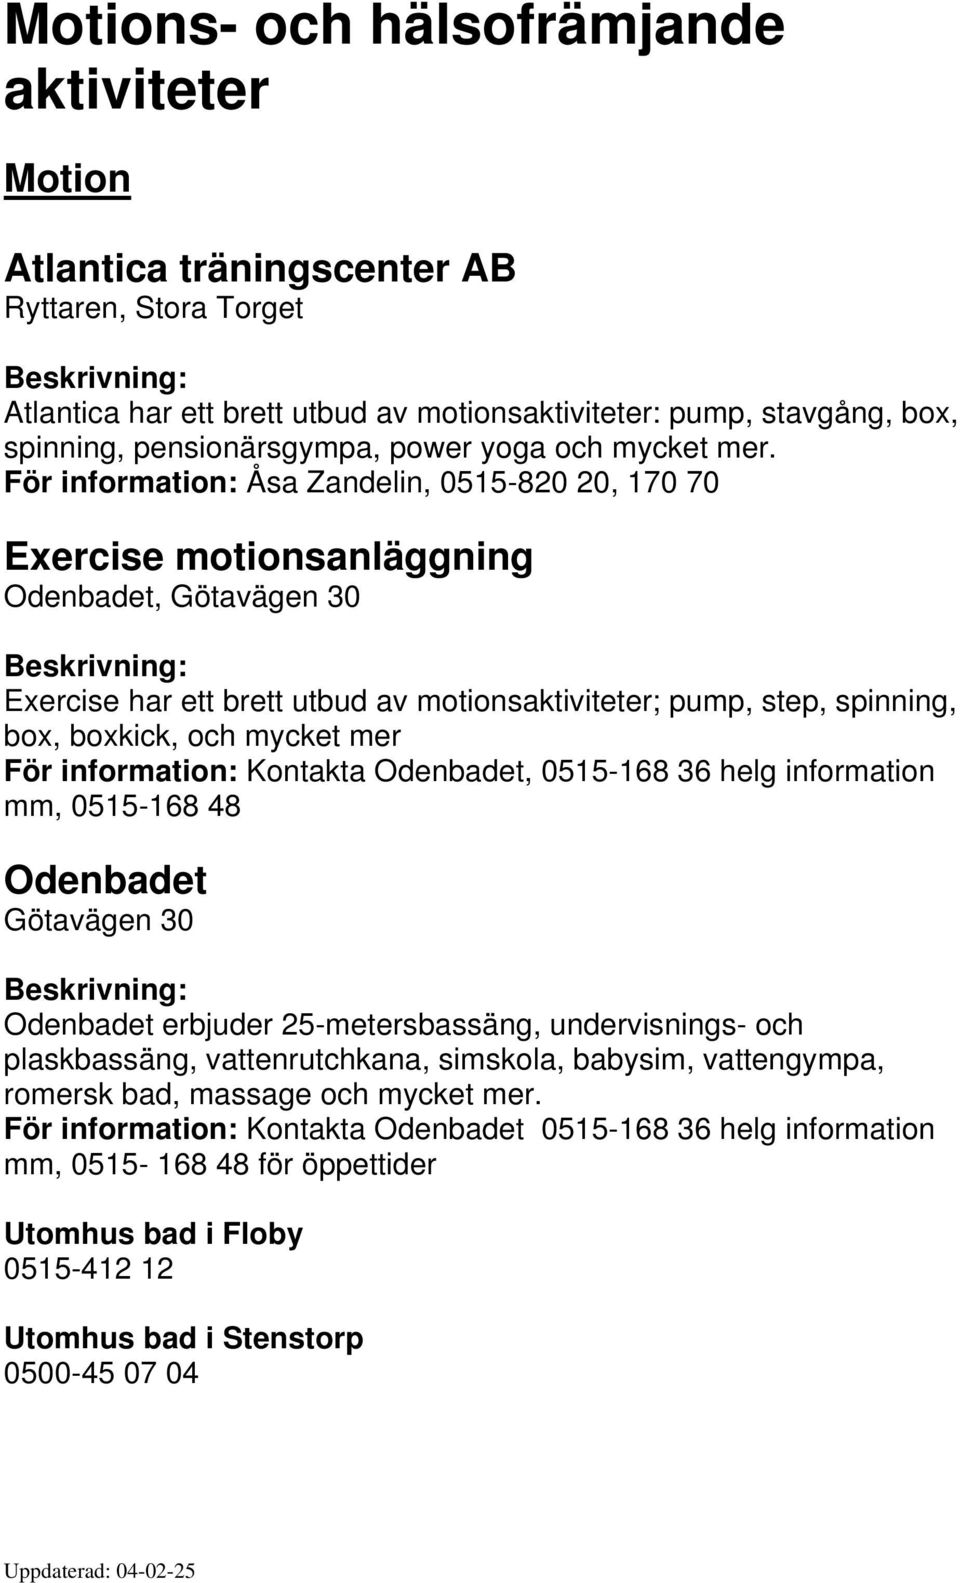 För information: Åsa Zandelin, 0515-820 20, 170 70 Exercise motionsanläggning Odenbadet, Götavägen 30 Exercise har ett brett utbud av motionsaktiviteter; pump, step, spinning, box, boxkick, och